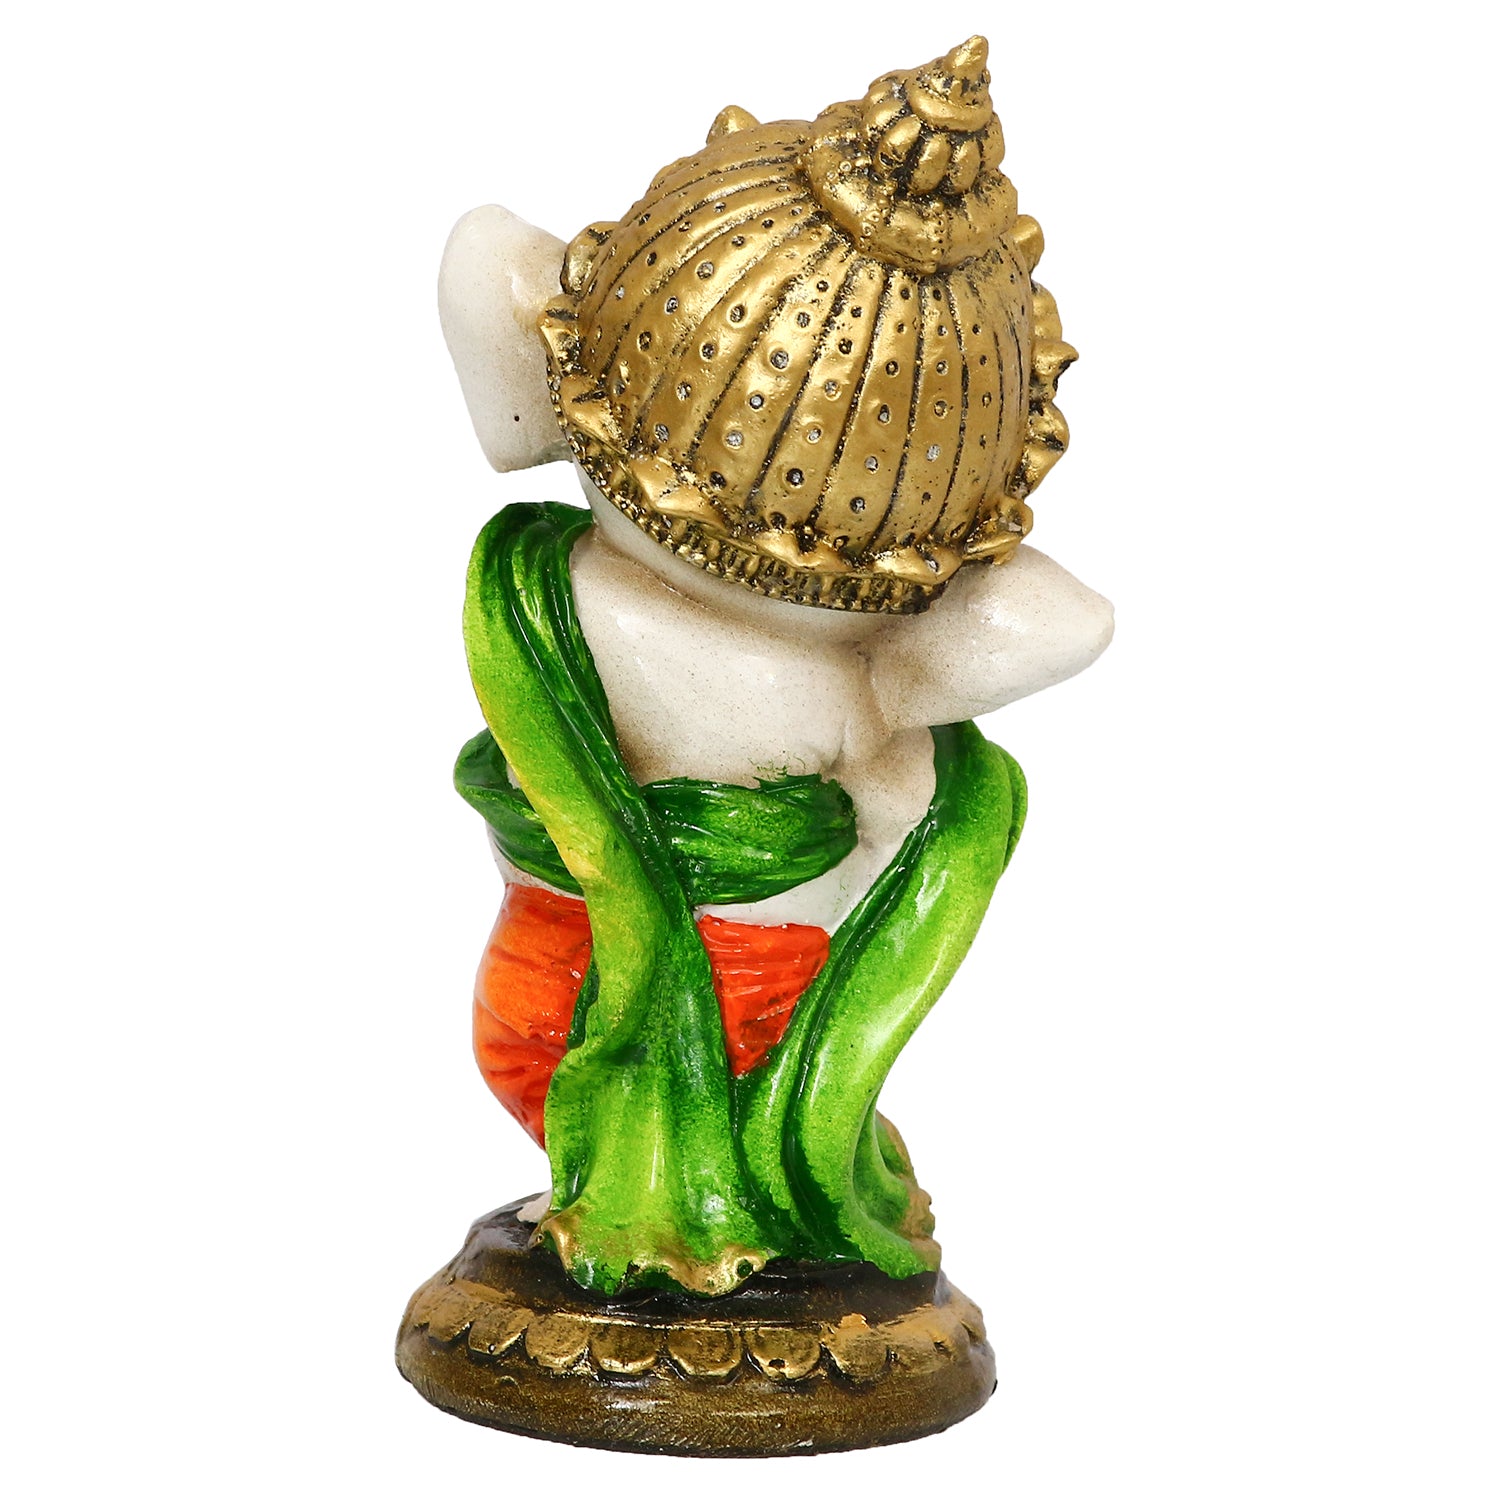 Lord Ganesha Idol In Dancing Avatar Decorative Showpiece 6